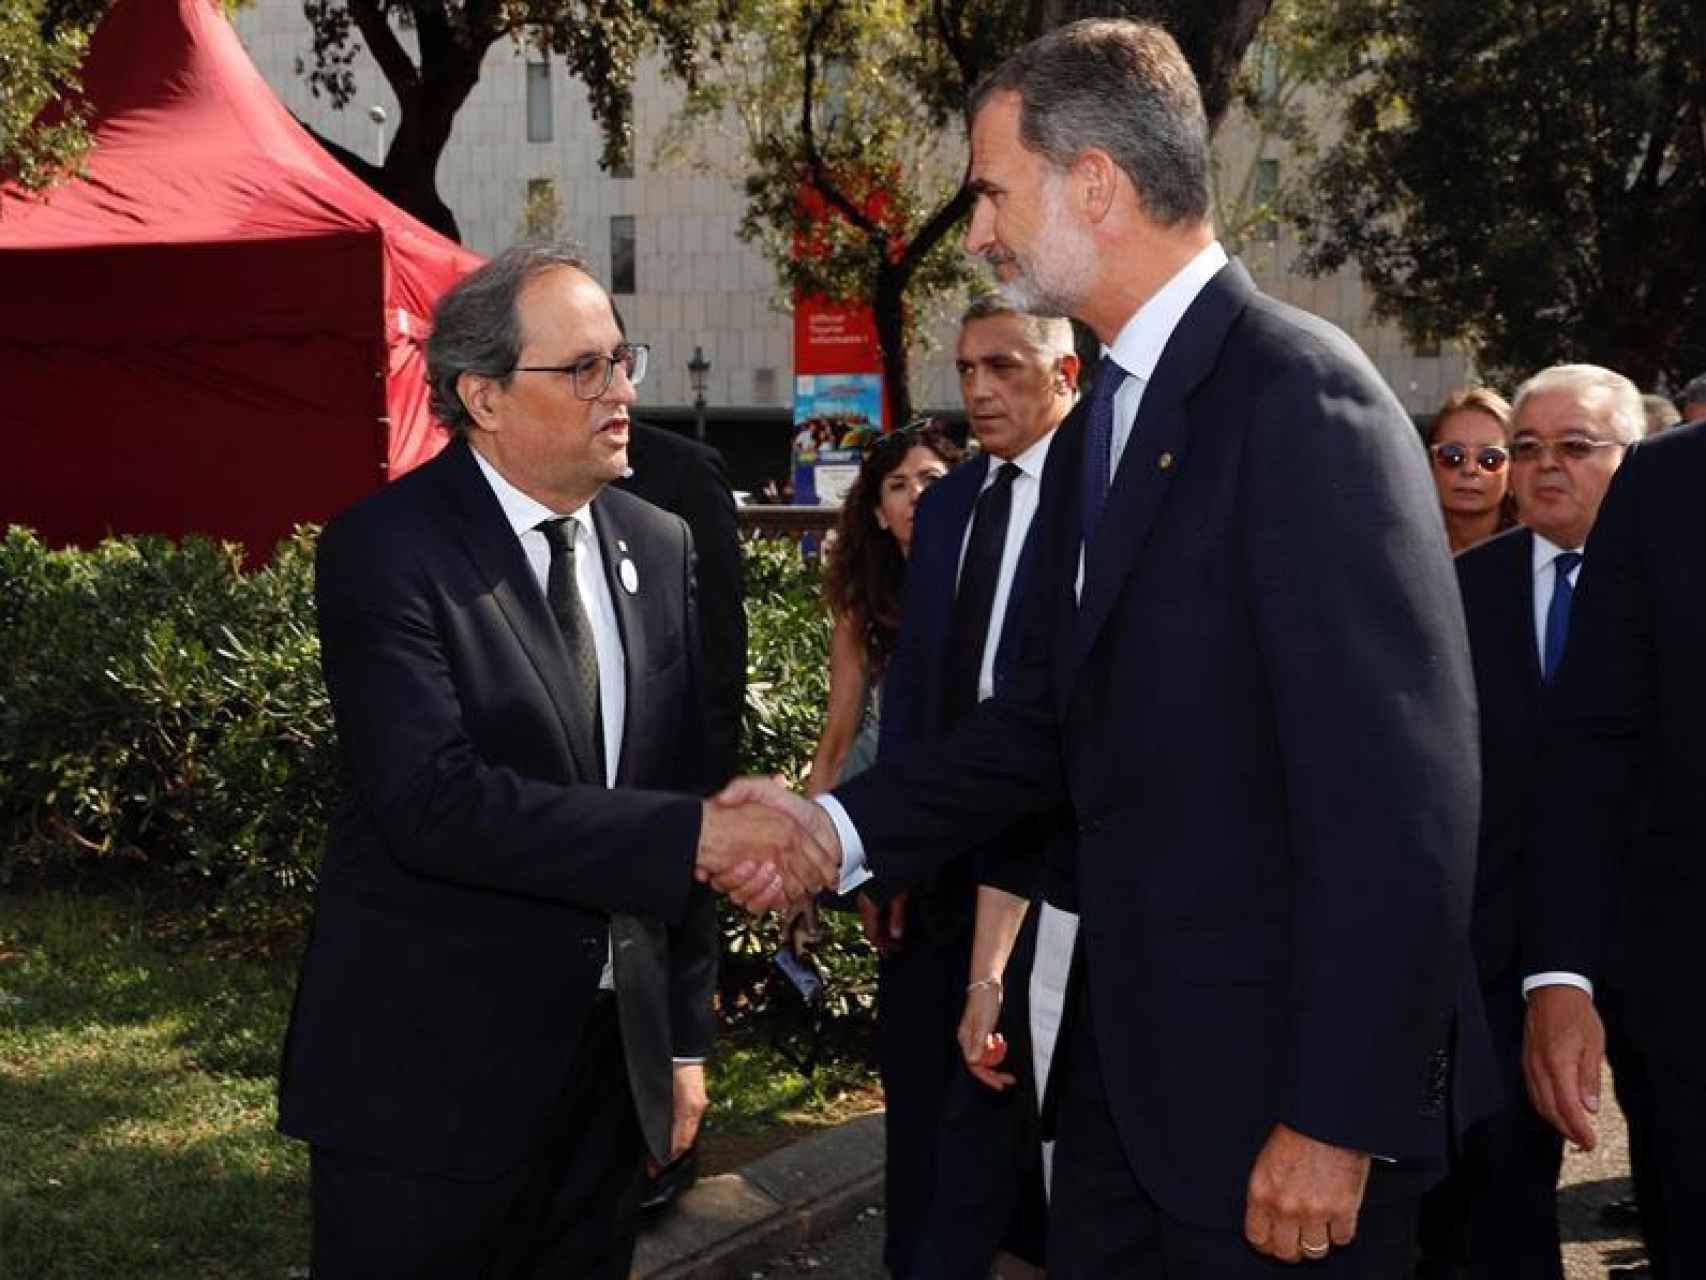 El Rey Felipe VI saluda al presidente de la Generalidad, Quim Torra, a su llegada a la Plaza Cataluña.